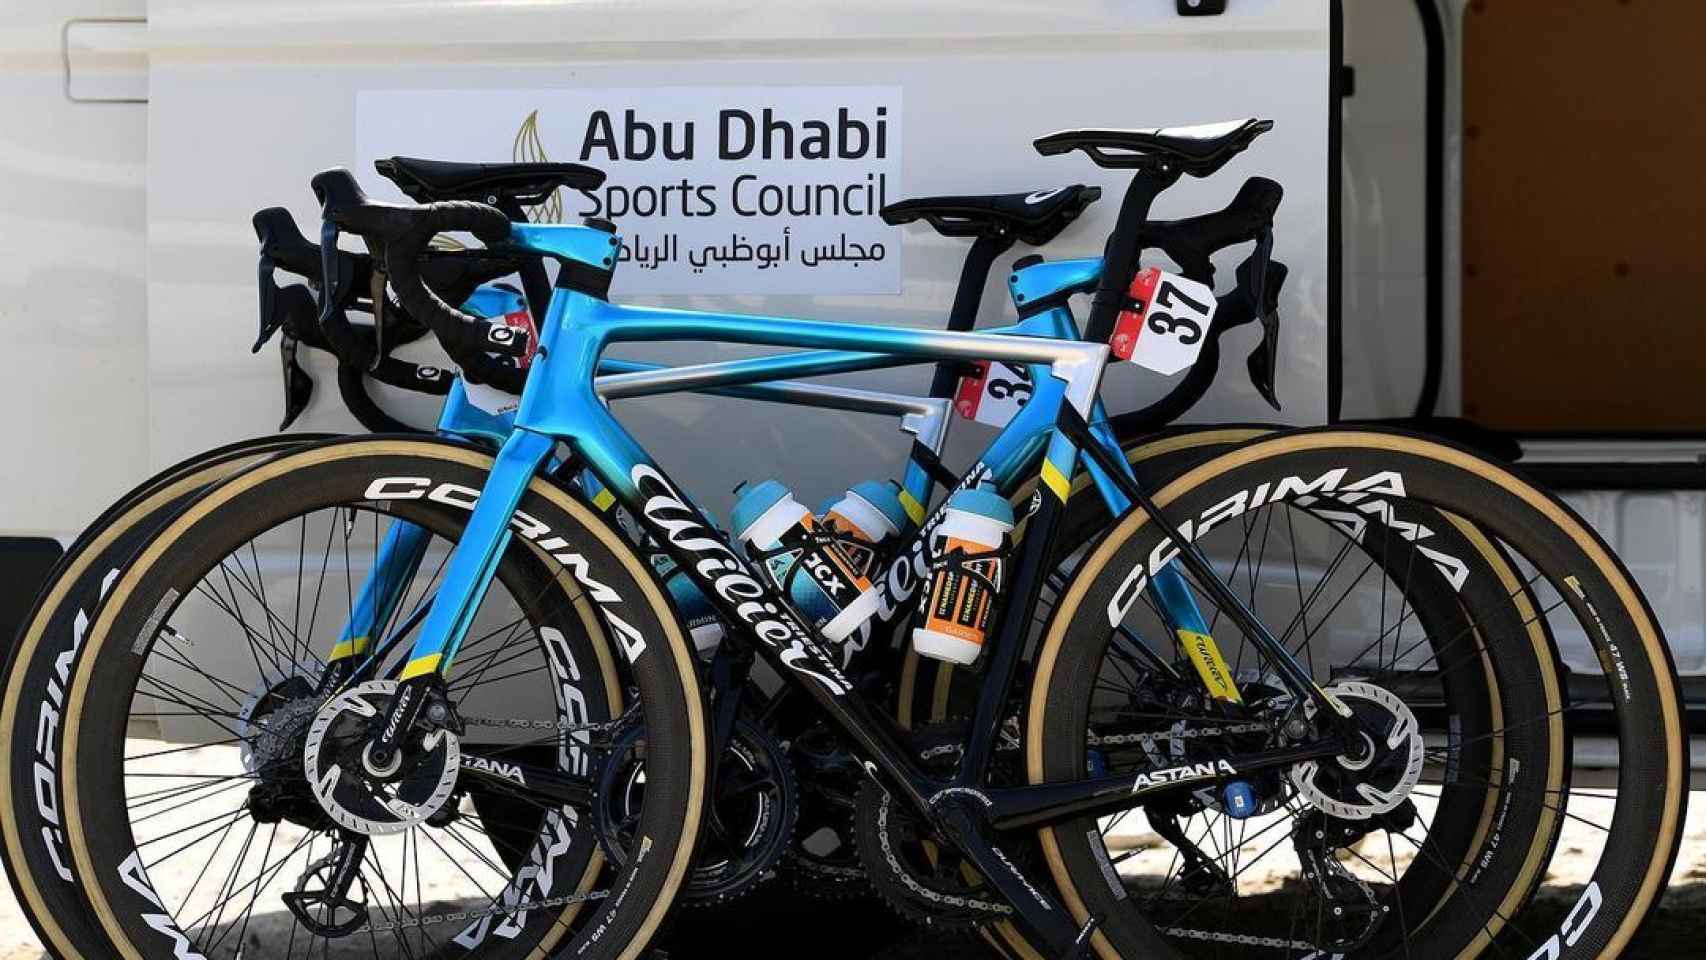 Bicicletas del equipo Astana preparadas para una carrera